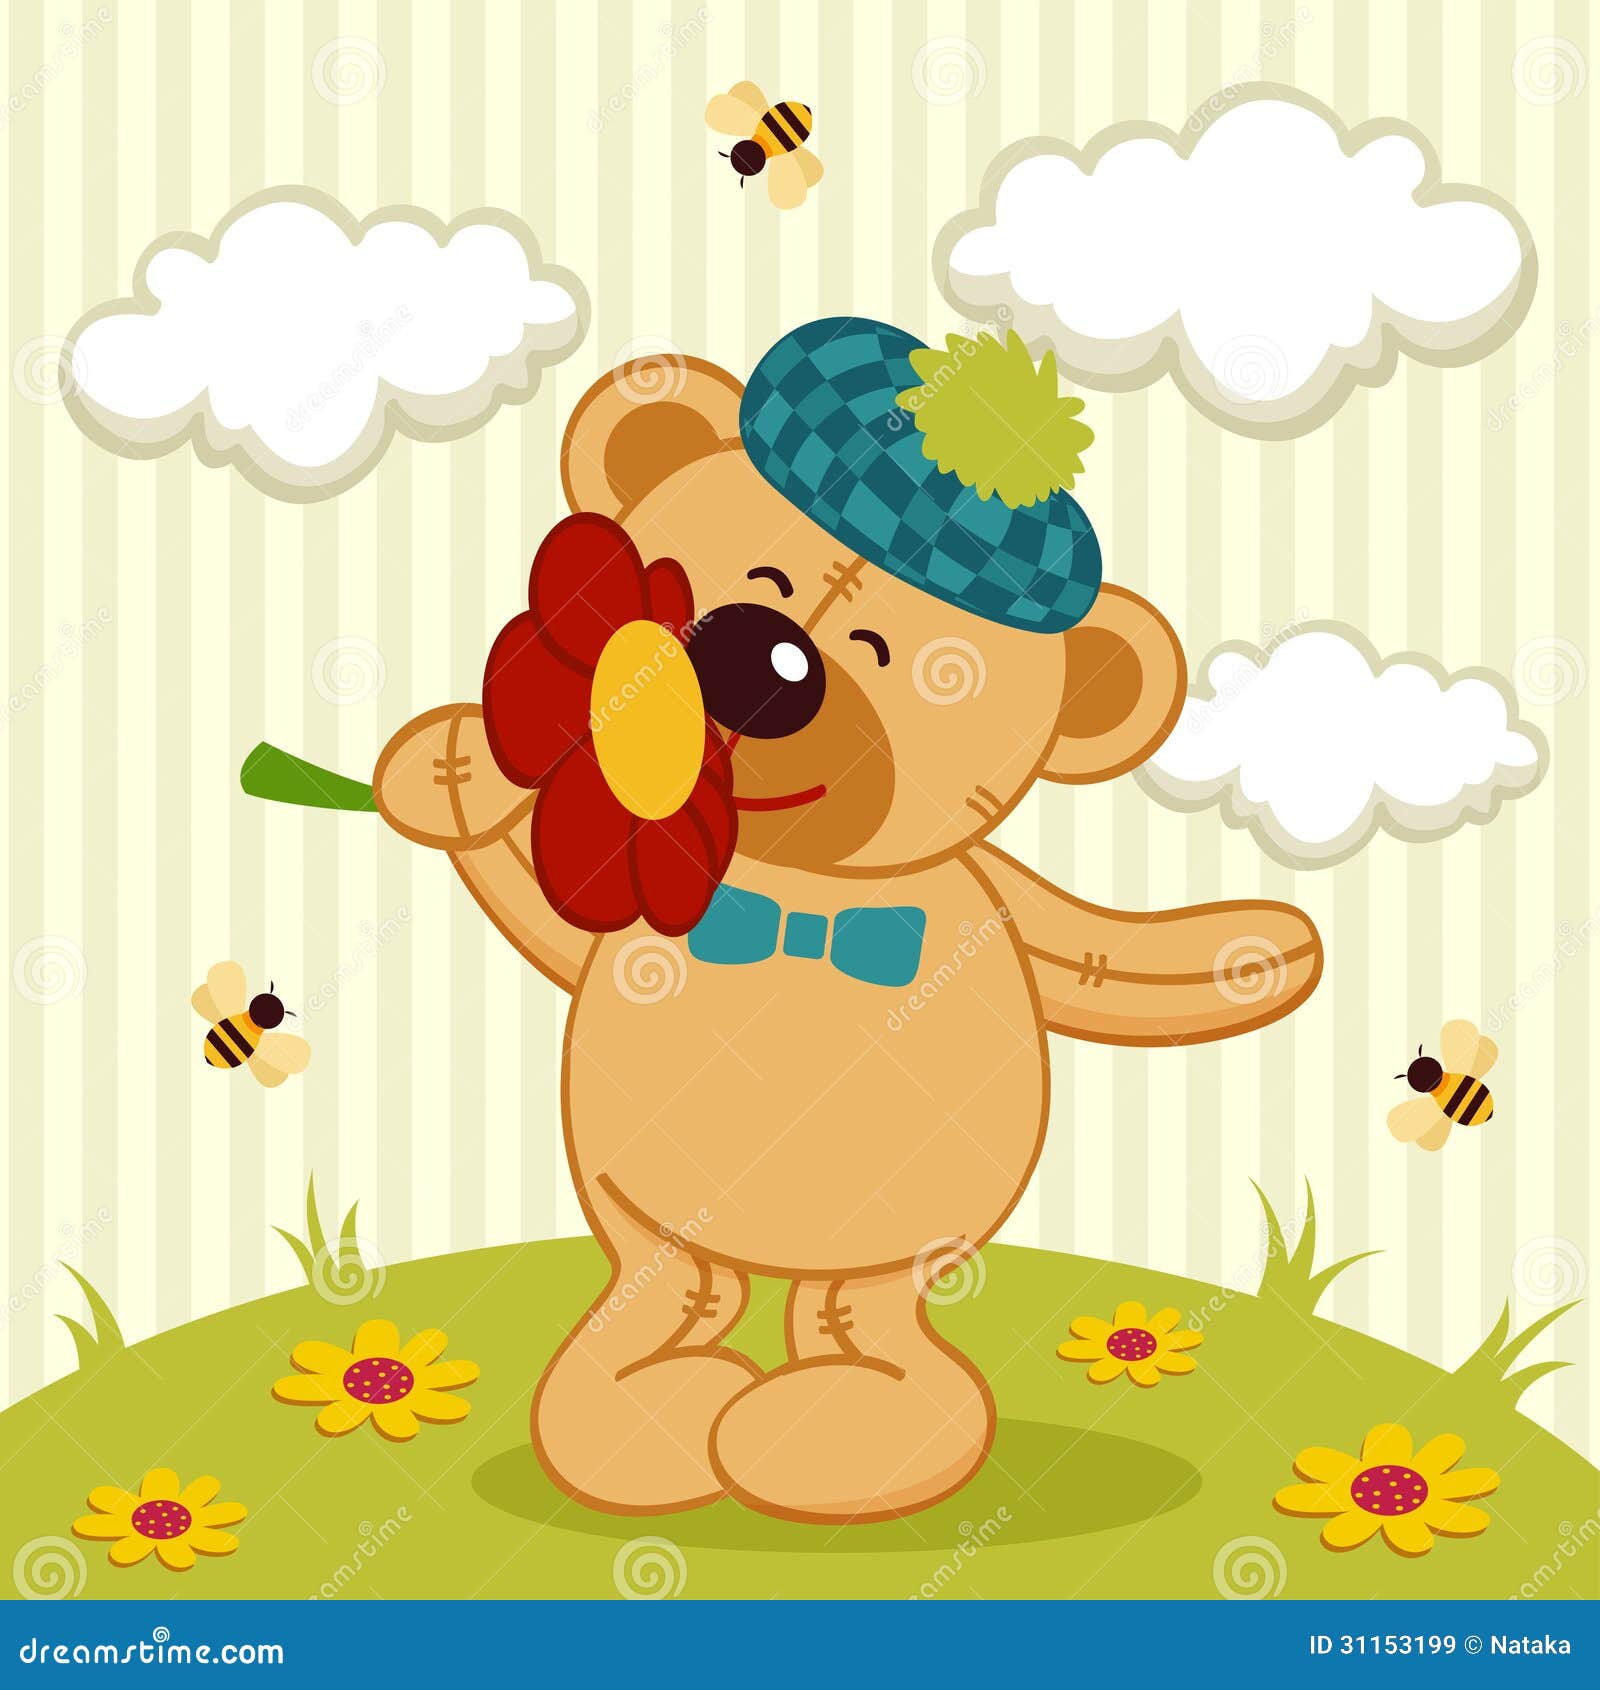 teddy bear with flowers clipart - photo #8